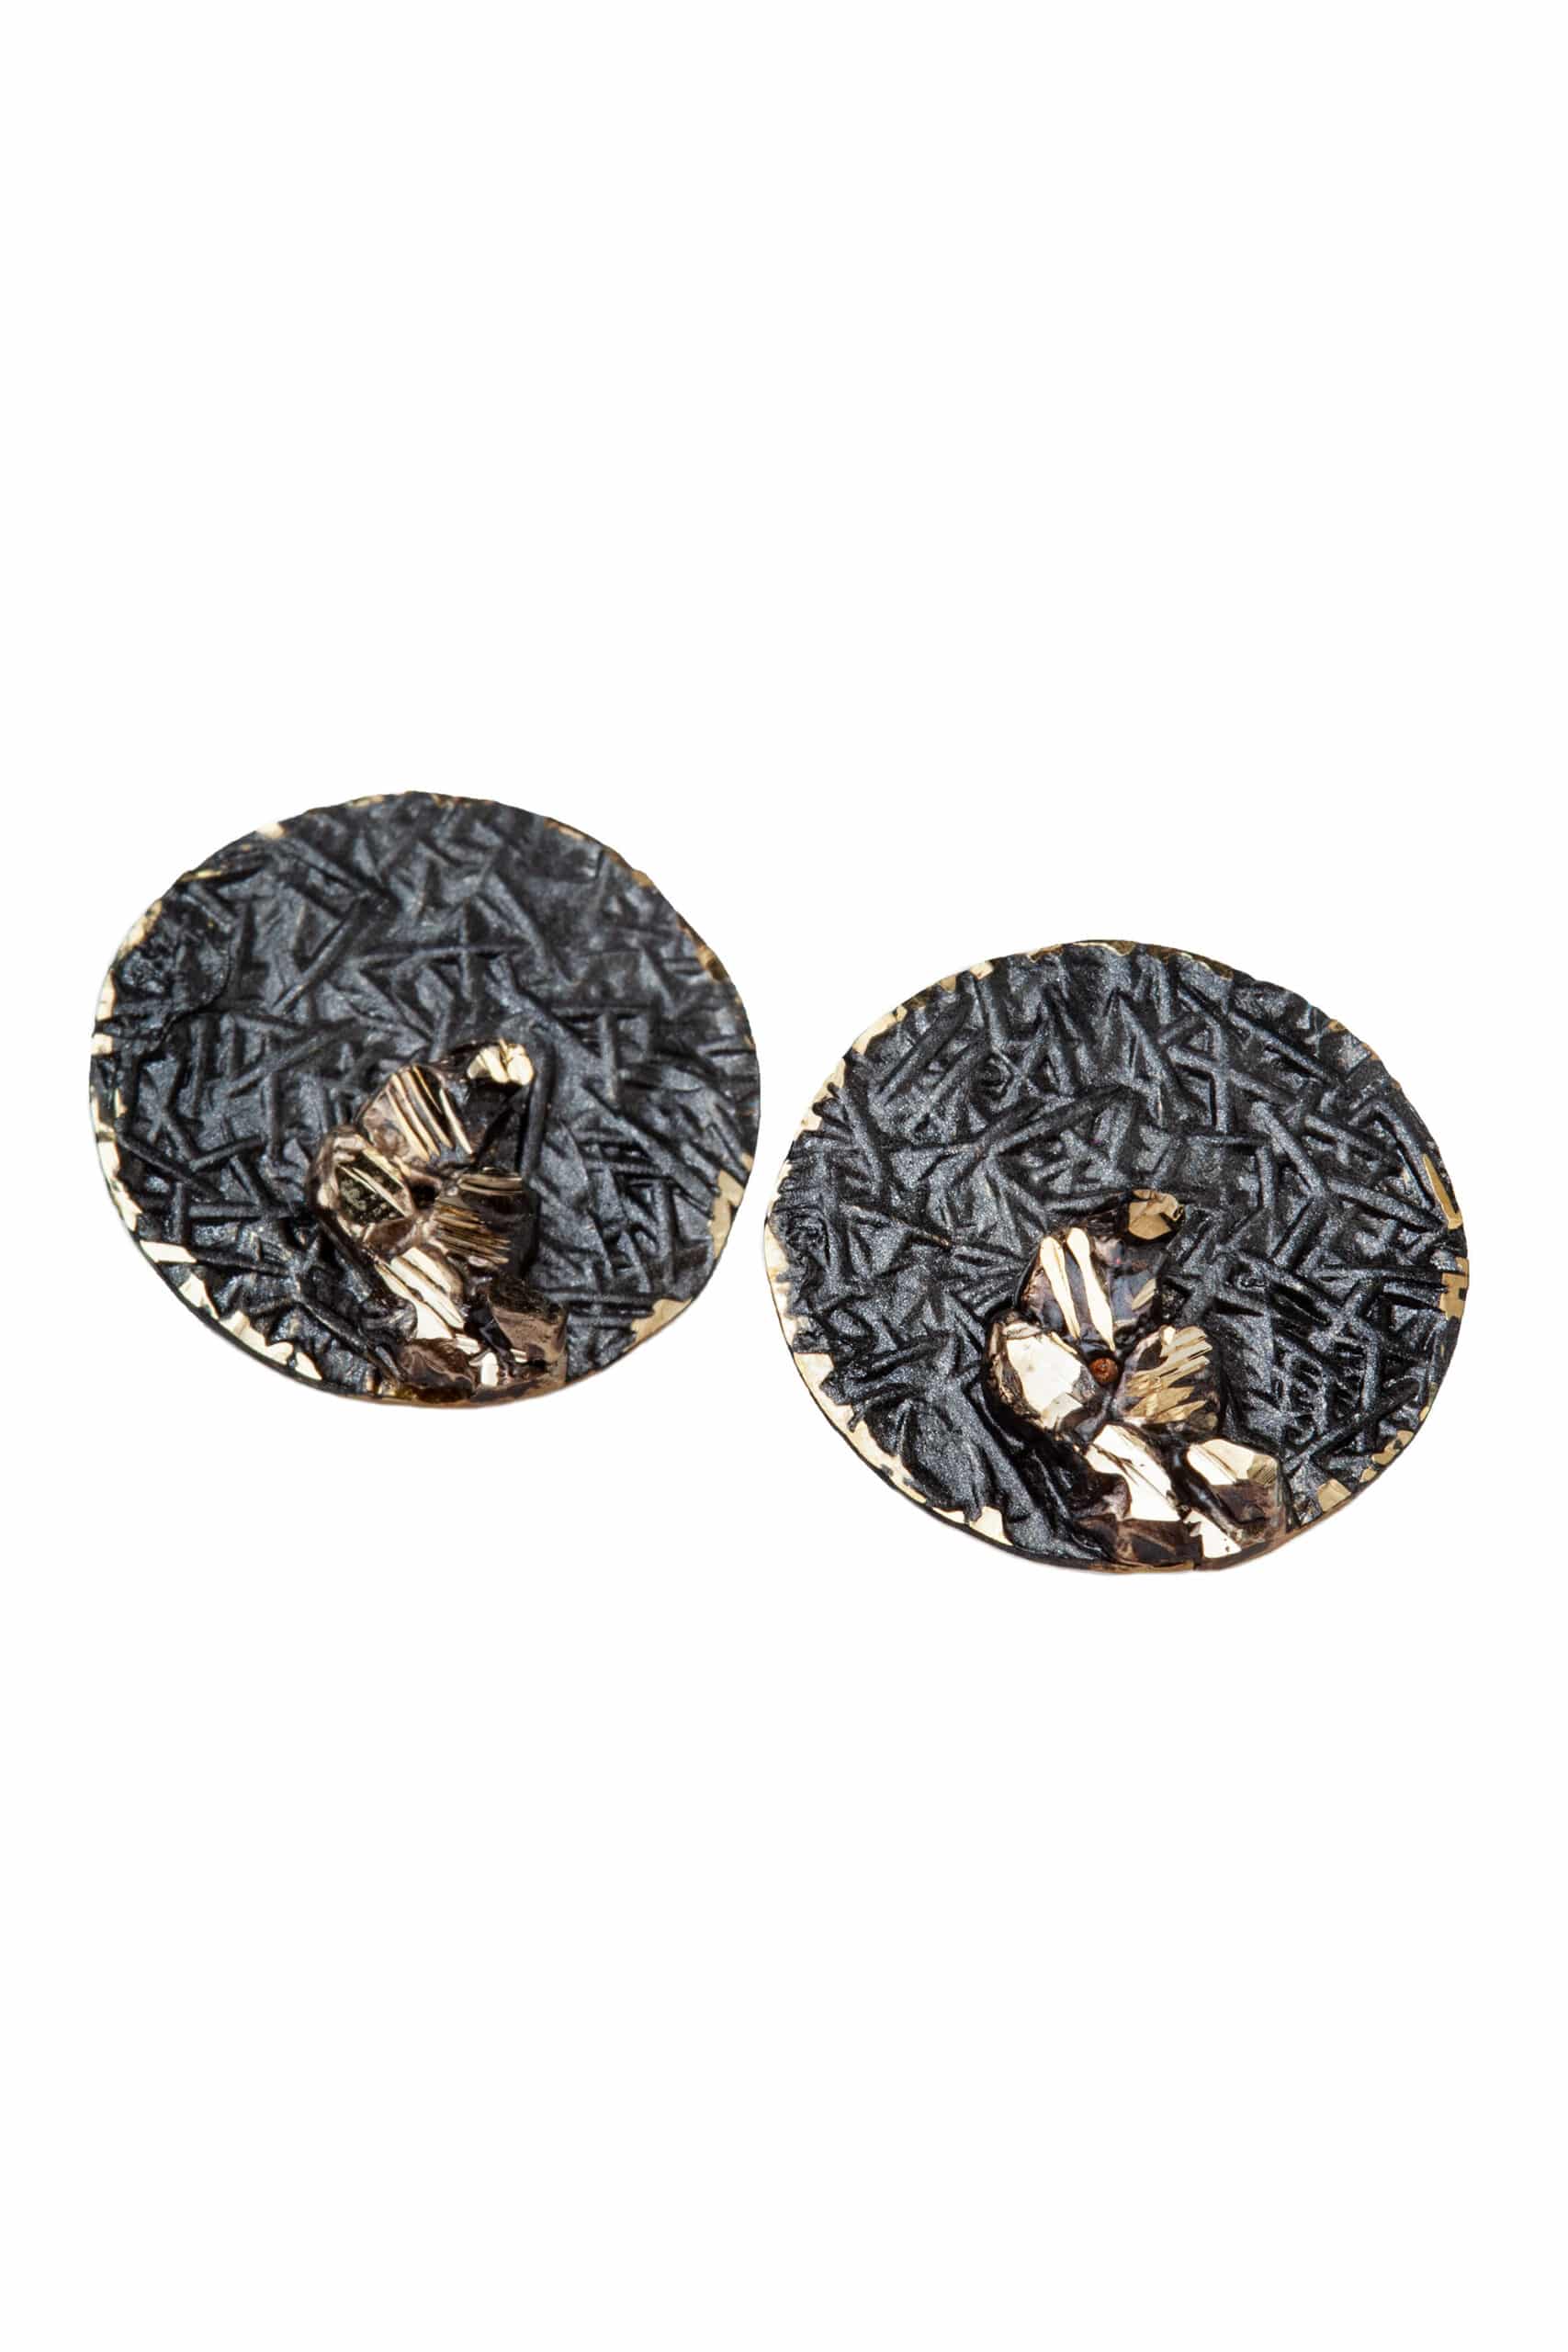 Χειροποίητα κοσμήματα | Στρογγυλά καρφωτά σκουλαρίκια από ορείχαλκο με μαύρη και χρυσή αντικέ χρωματιστή πατίνα gallery 1